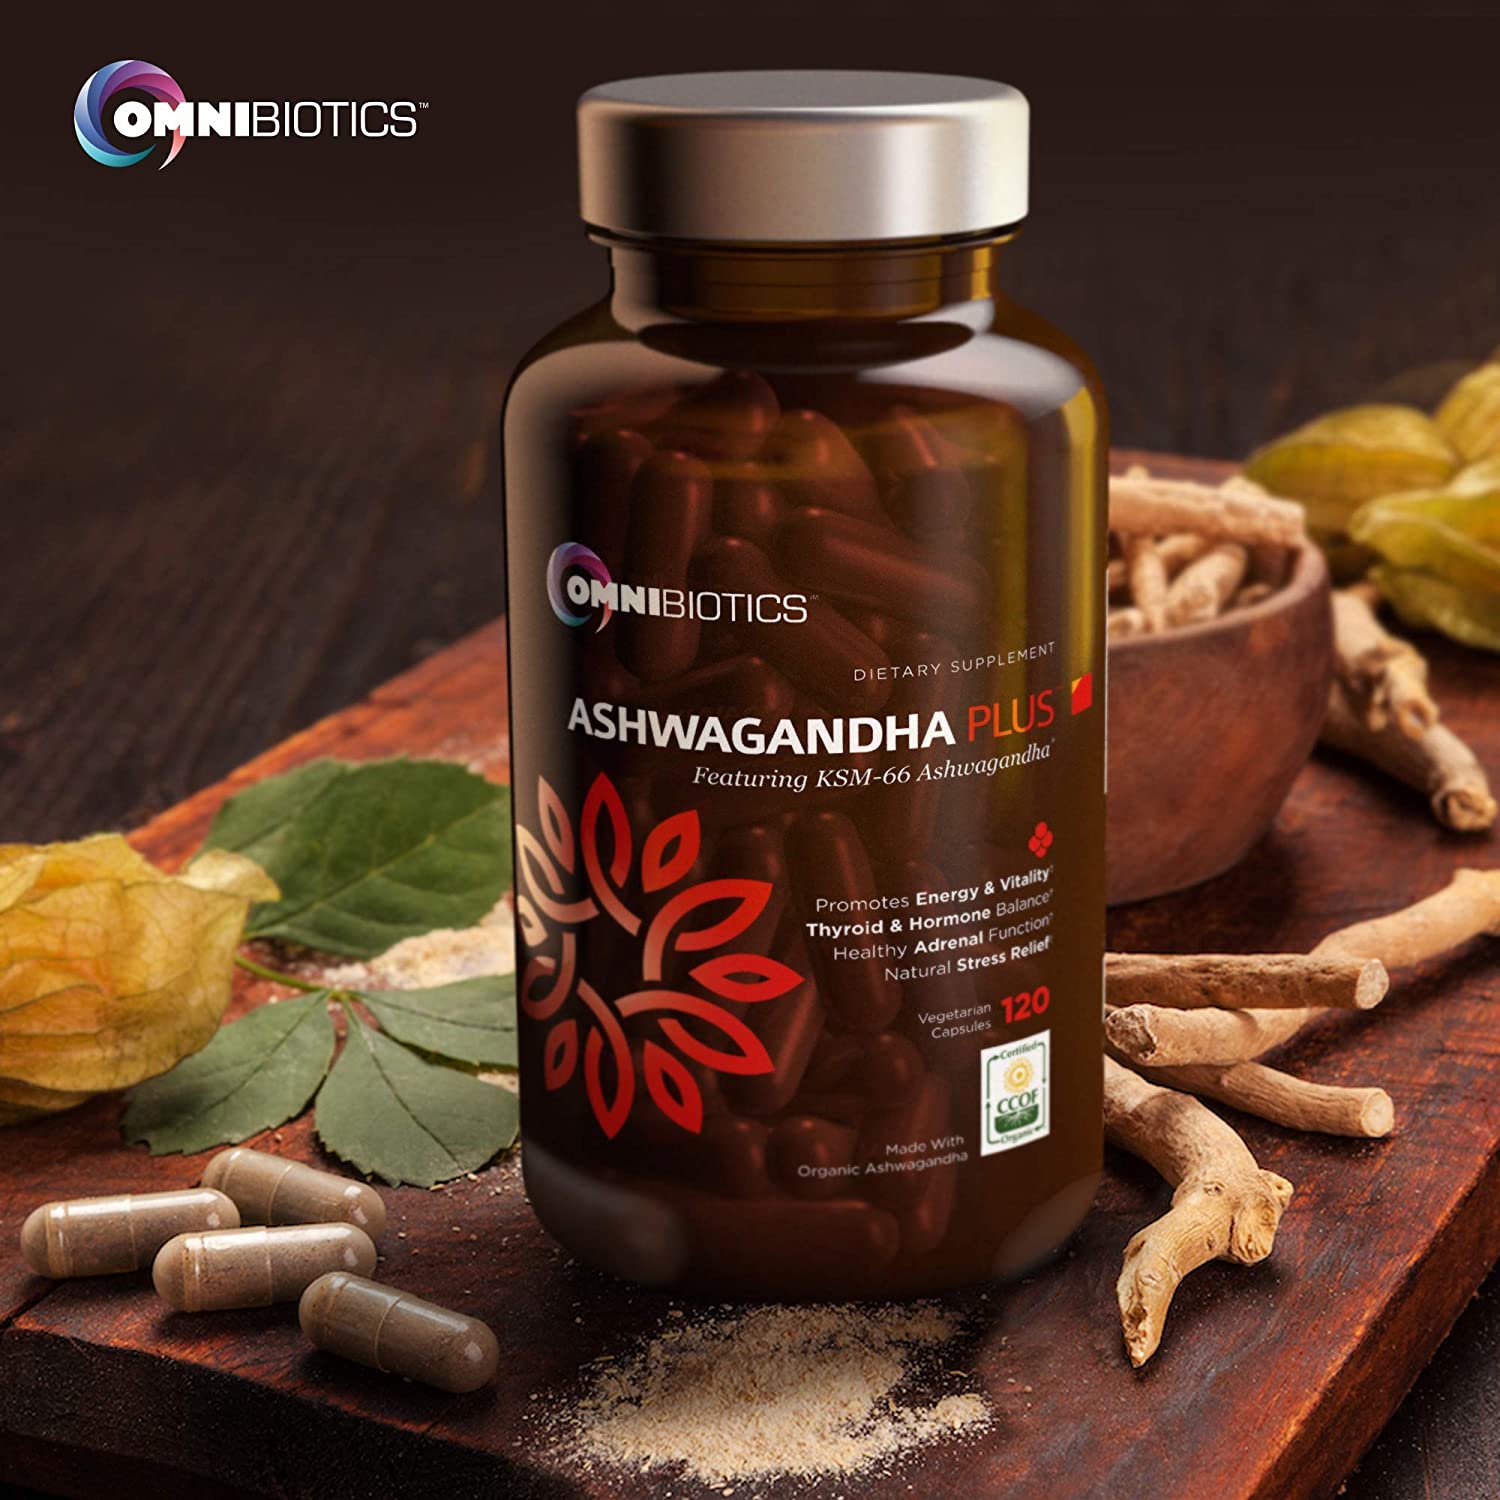 Certified Organic Ashwagandha Plus